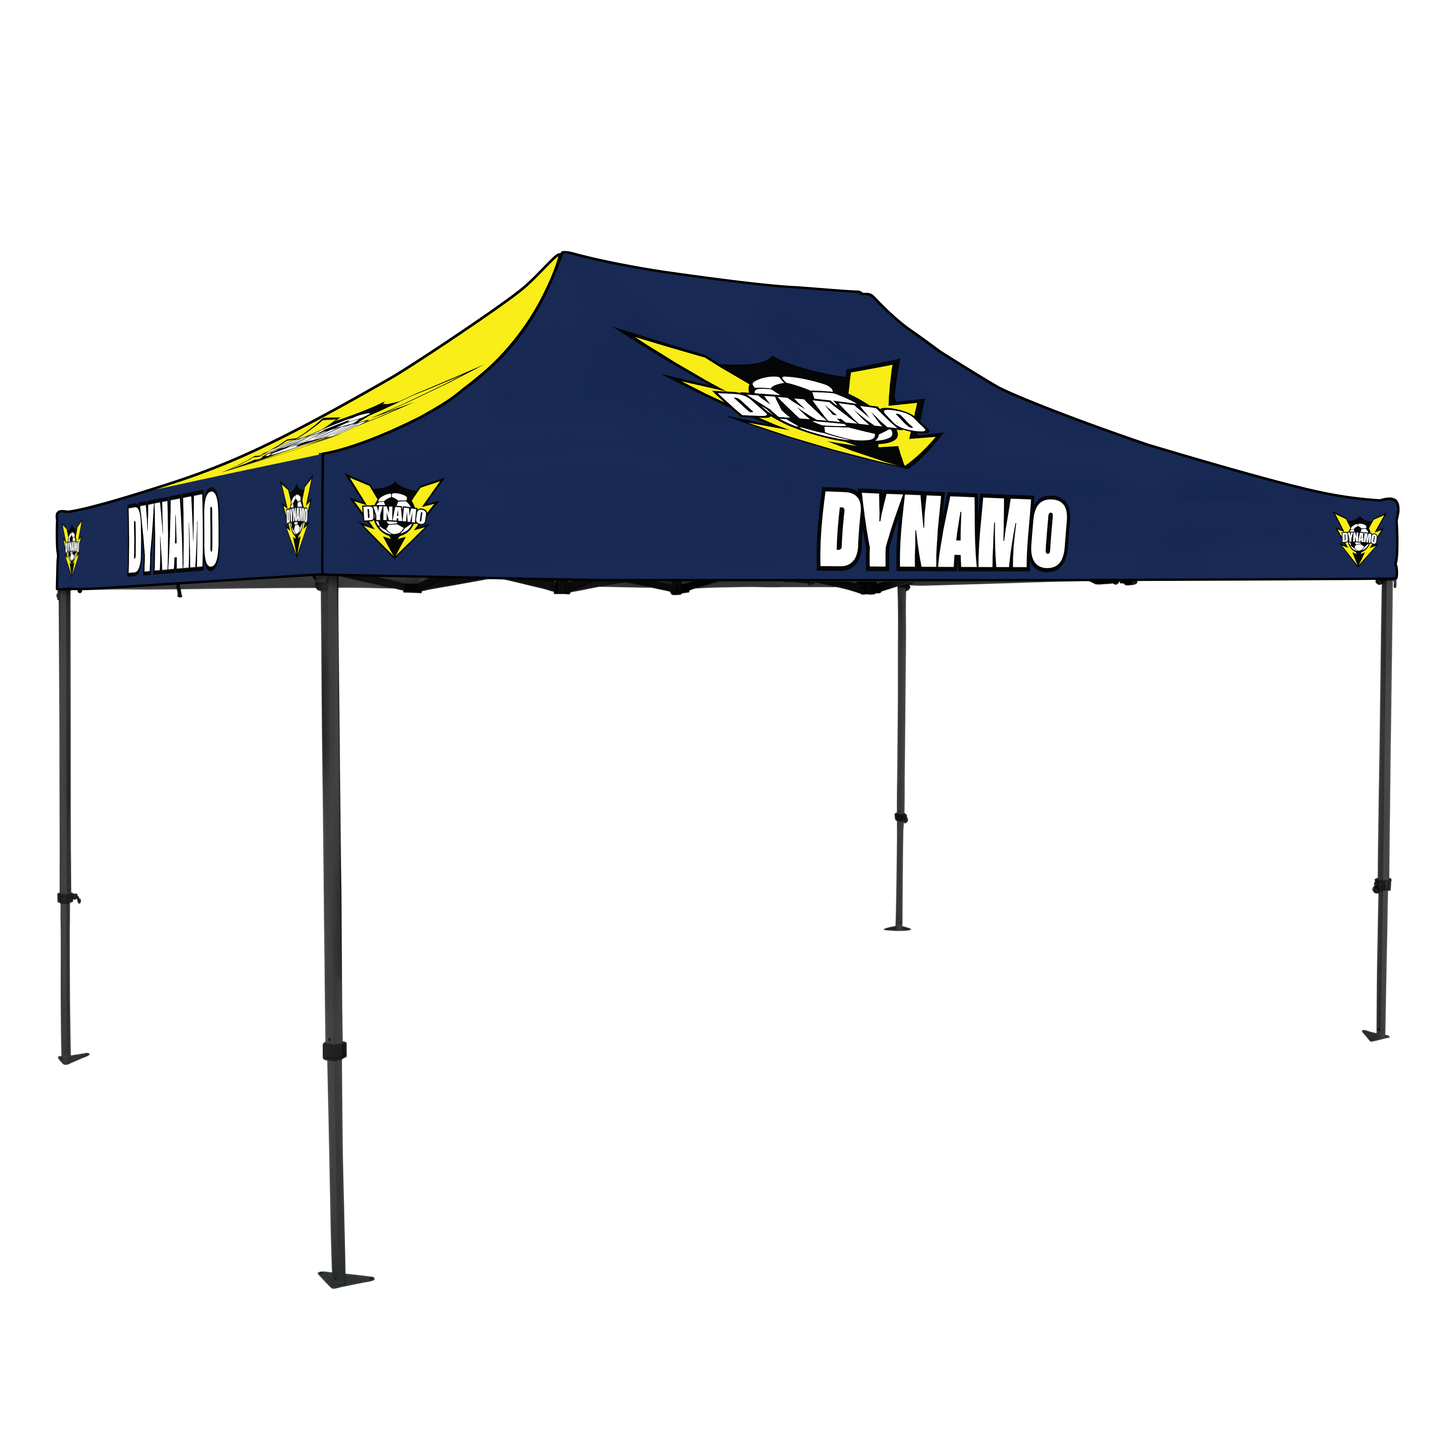 Dynamo 10x15 Canopy Kit